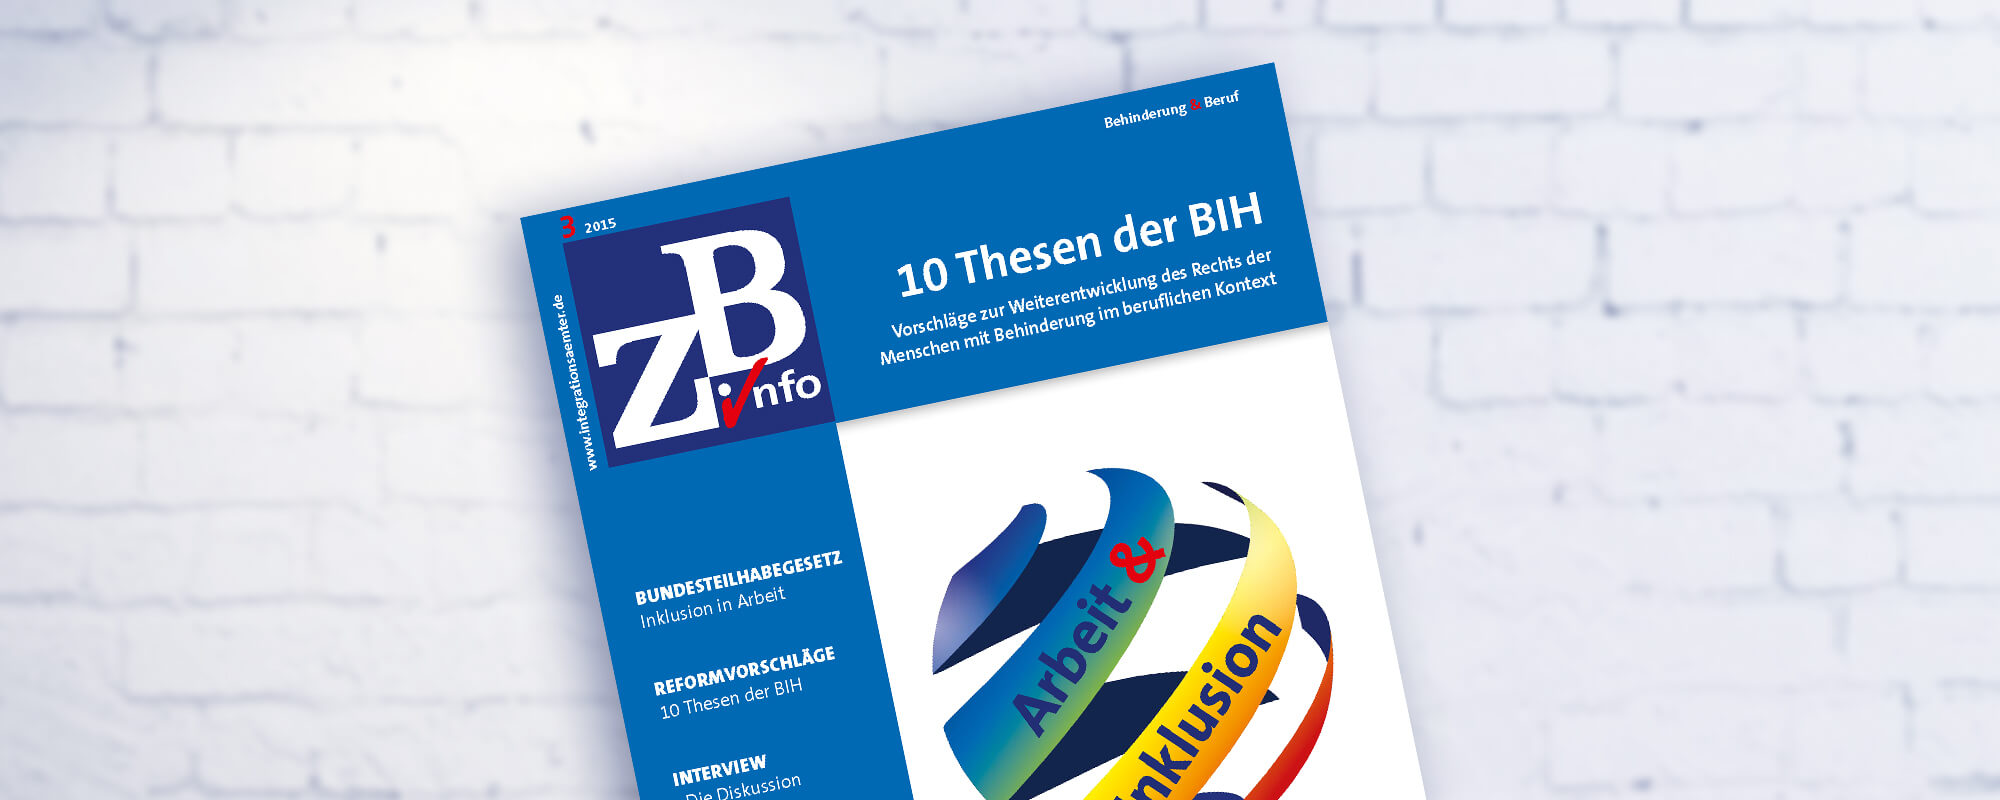 Cover der ZB Info zum Thema 10 Thesen der BIH. 